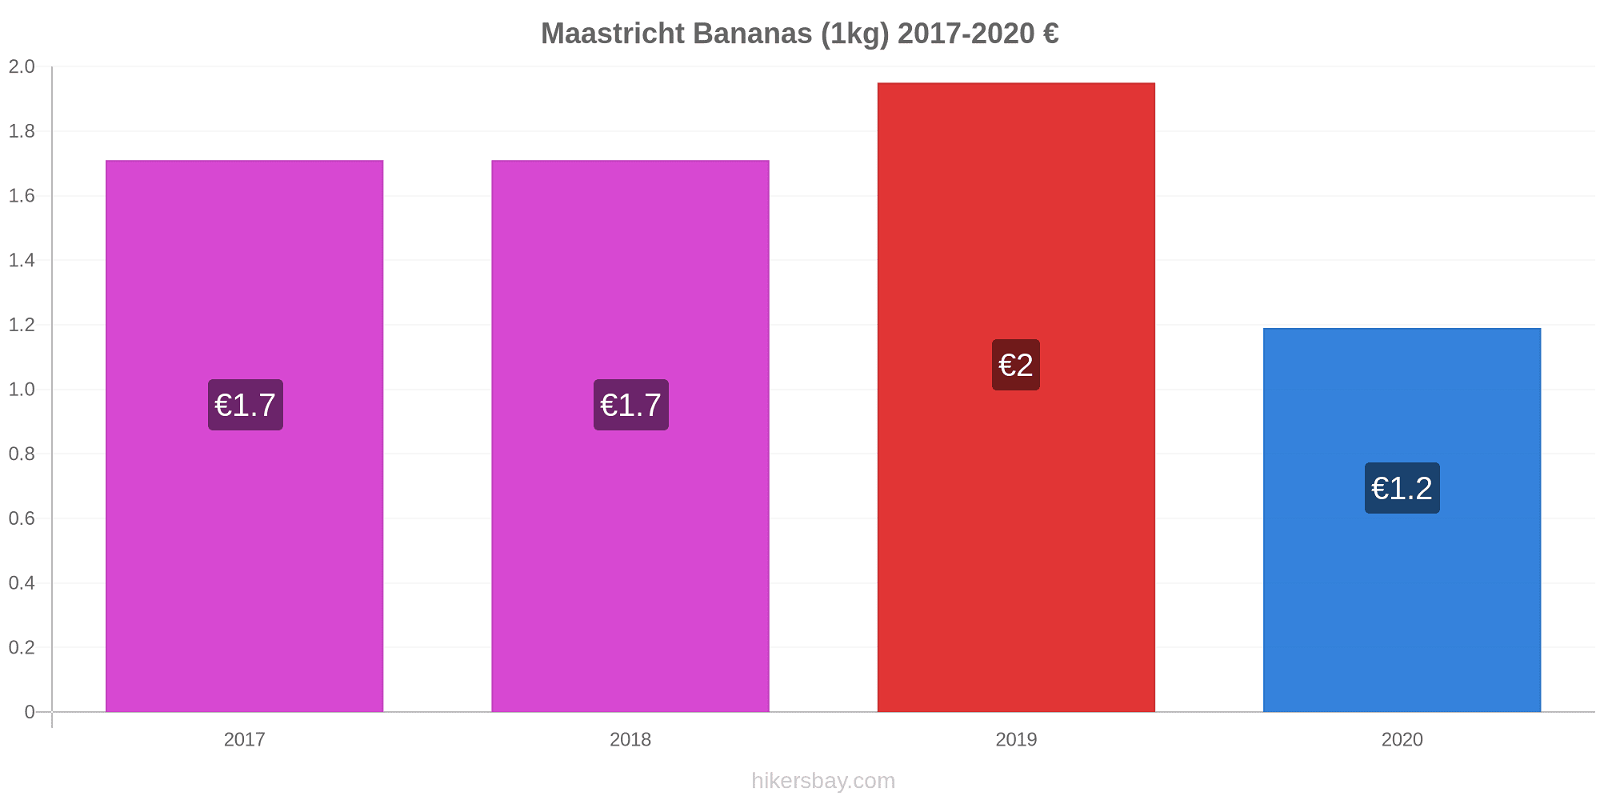 Maastricht price changes Bananas (1kg) hikersbay.com